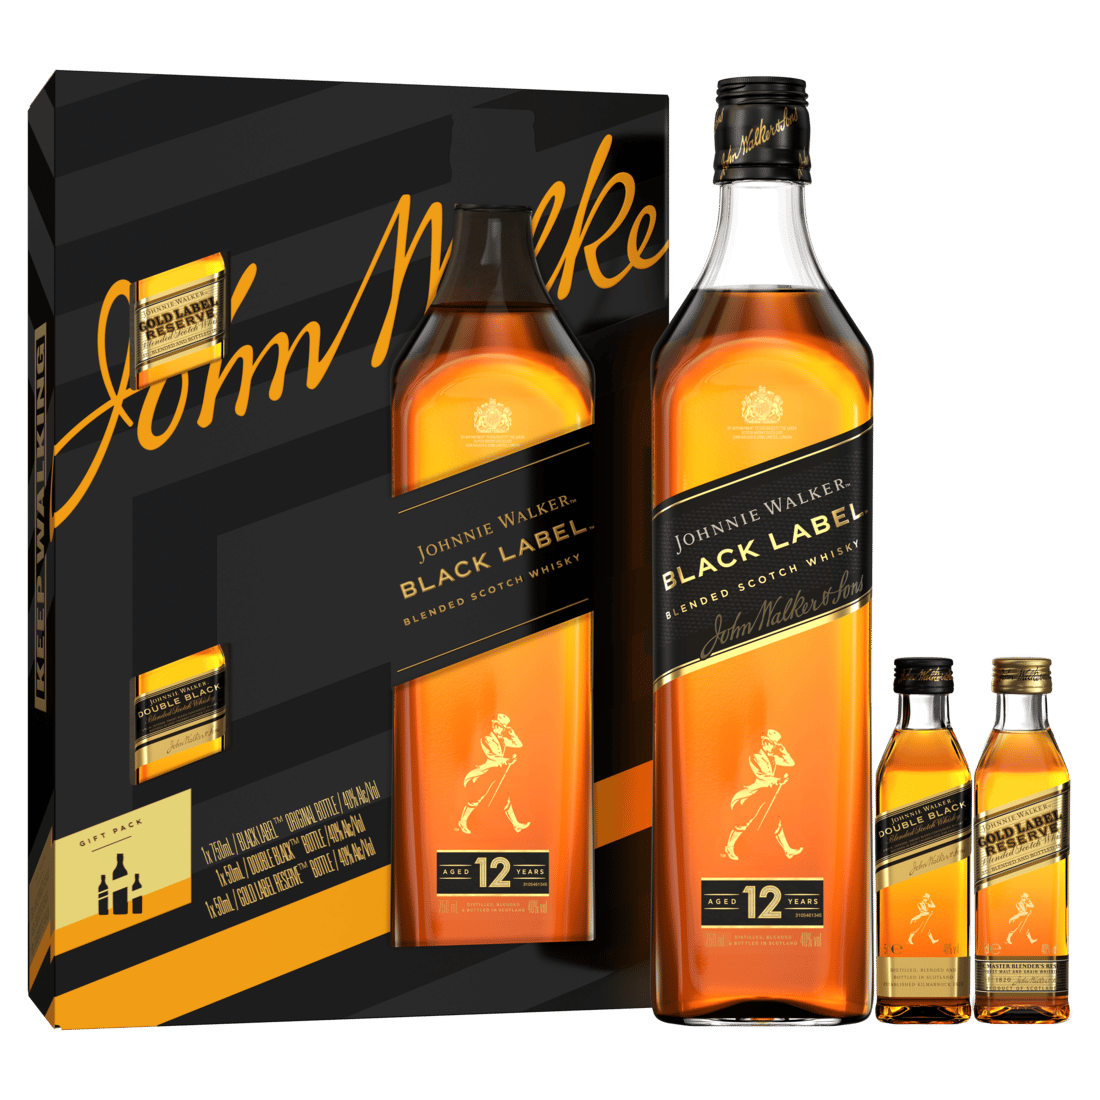 Super goed spons chocola Johnnie Walker Black Label giftbox and 2 mini bottles 2022 – Prike